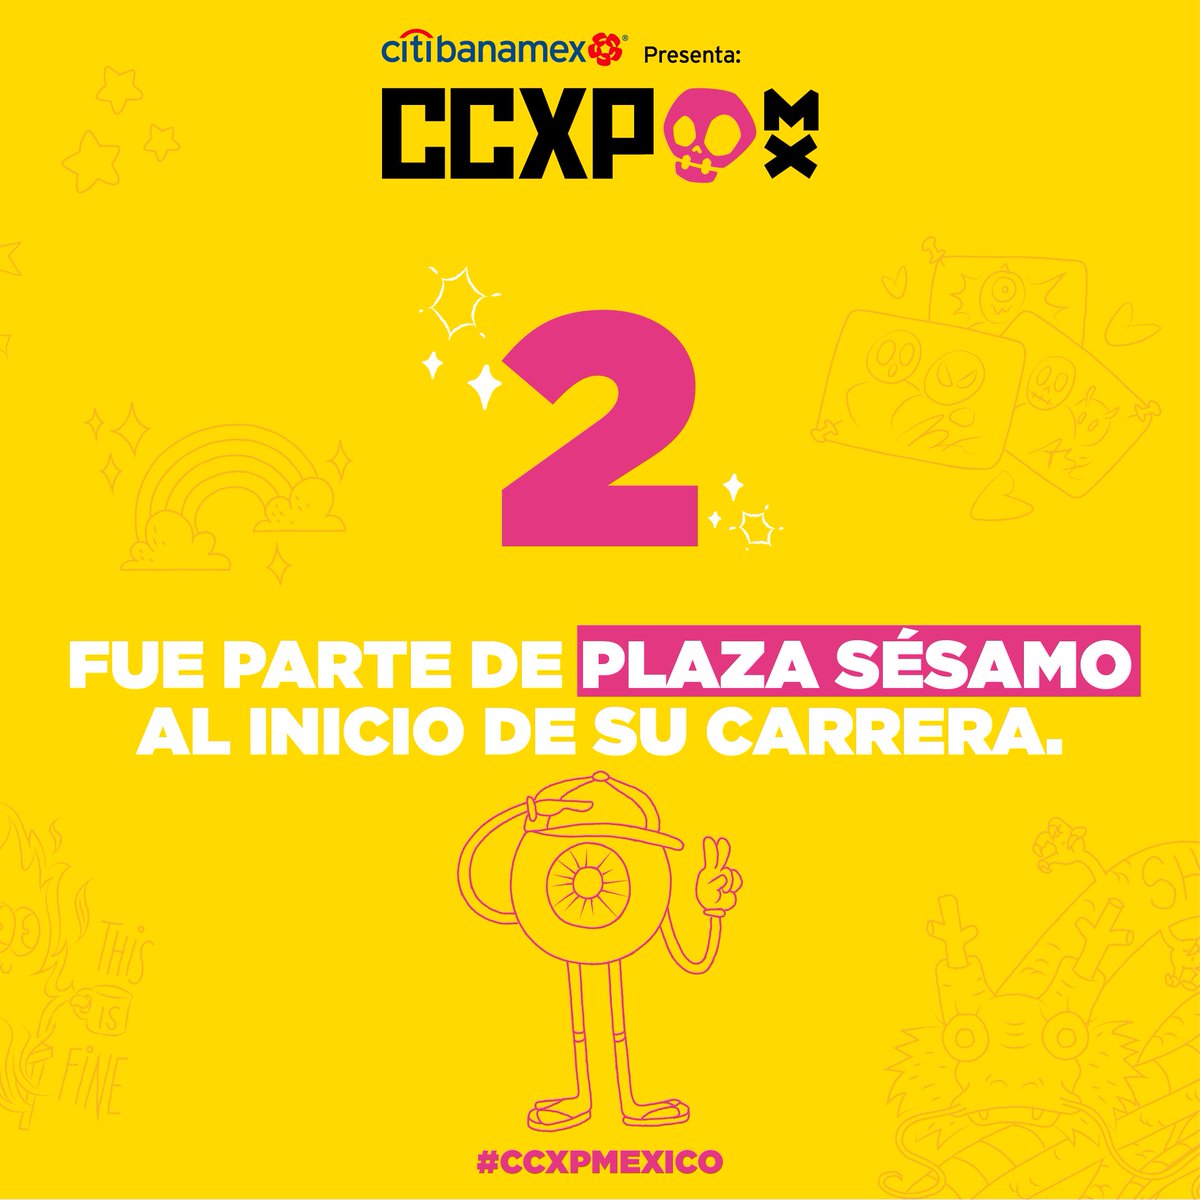 CCXPMexico tweet picture